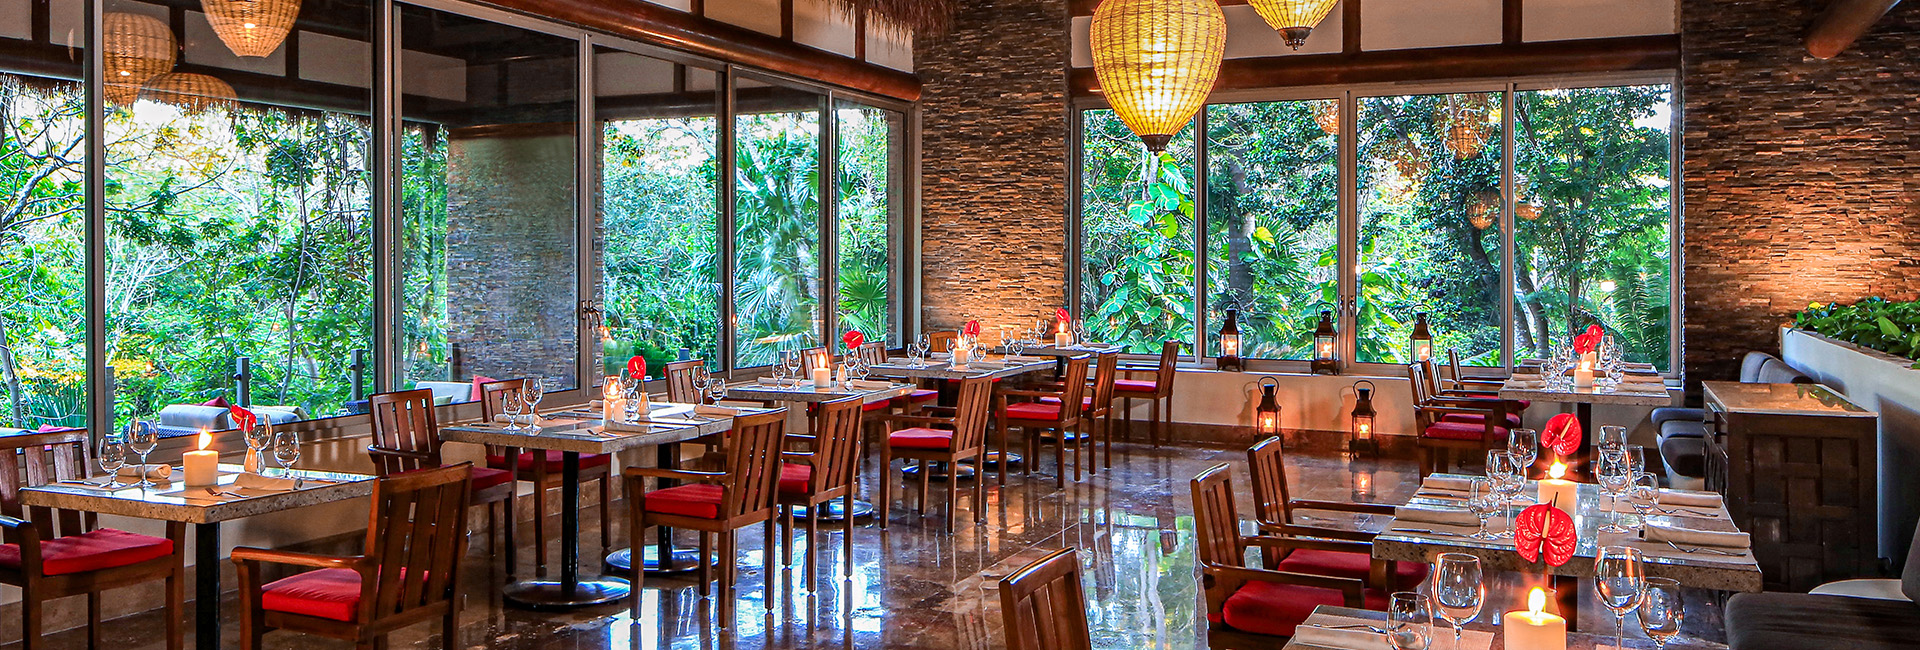 Chaká Restaurant in Grand Velas Riviera Maya